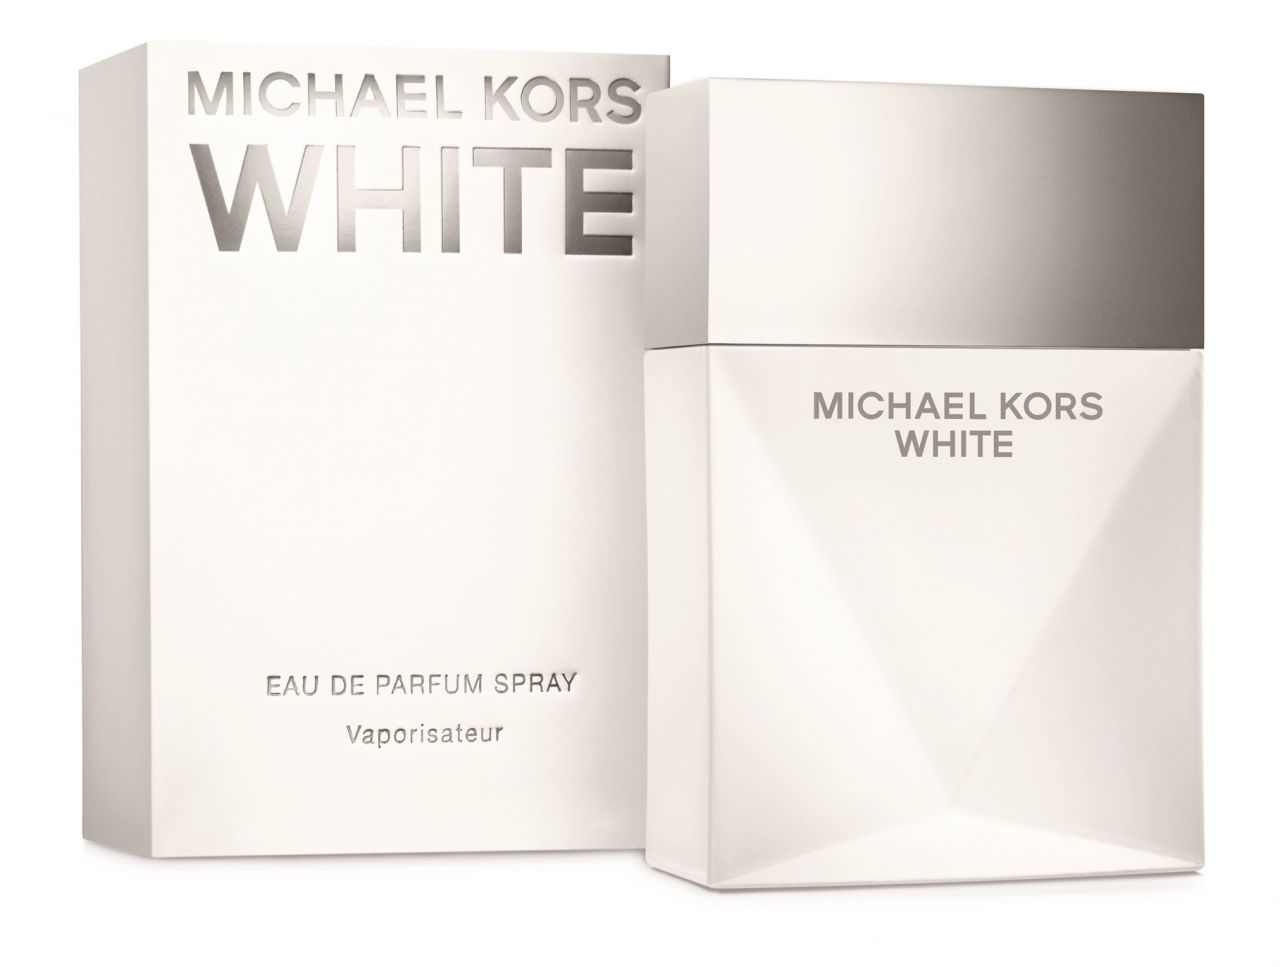 MICHAEL KORS WHITE